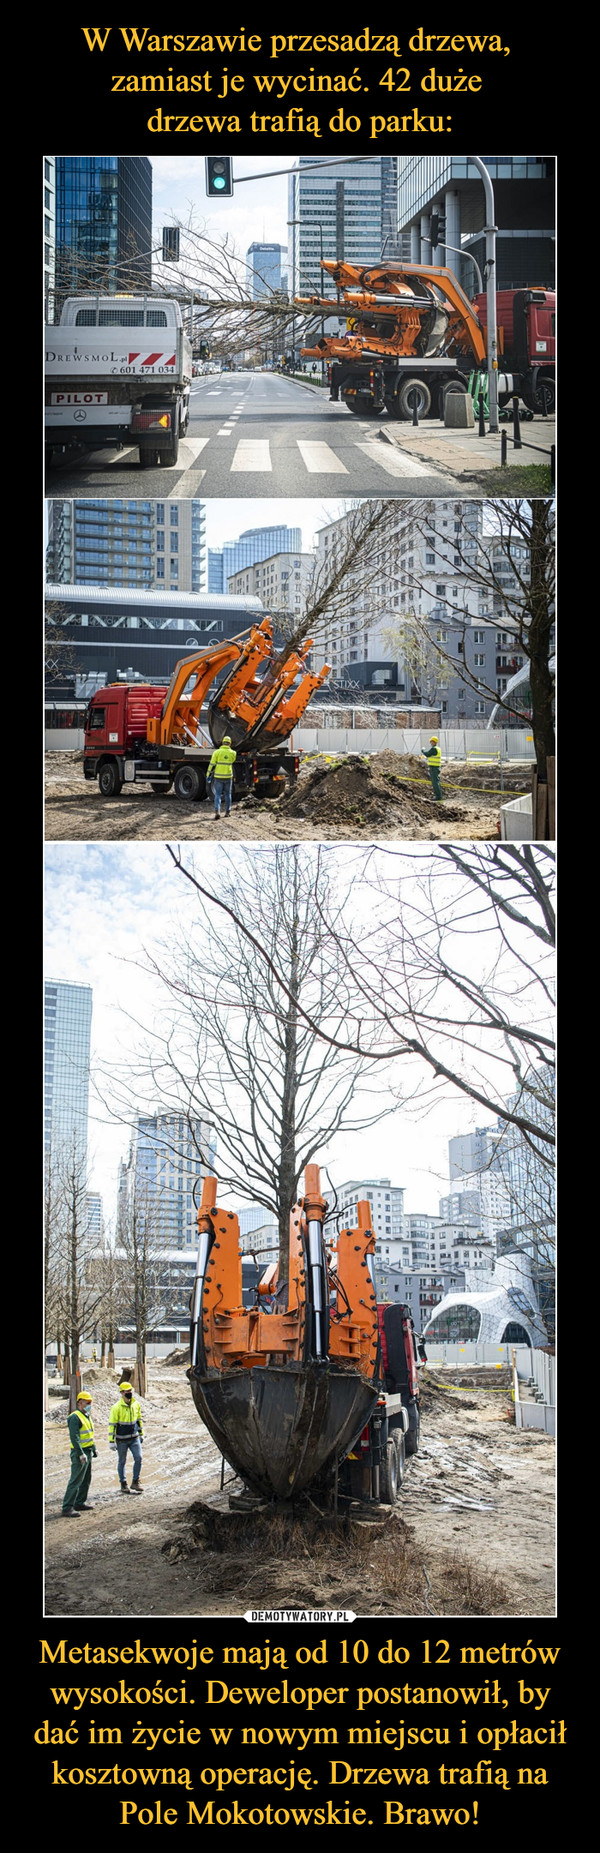 W Warszawie przesadzą drzewa, 
zamiast je wycinać. 42 duże 
drzewa trafią do parku: Metasekwoje mają od 10 do 12 metrów wysokości. Deweloper postanowił, by dać im życie w nowym miejscu i opłacił kosztowną operację. Drzewa trafią na Pole Mokotowskie. Brawo!